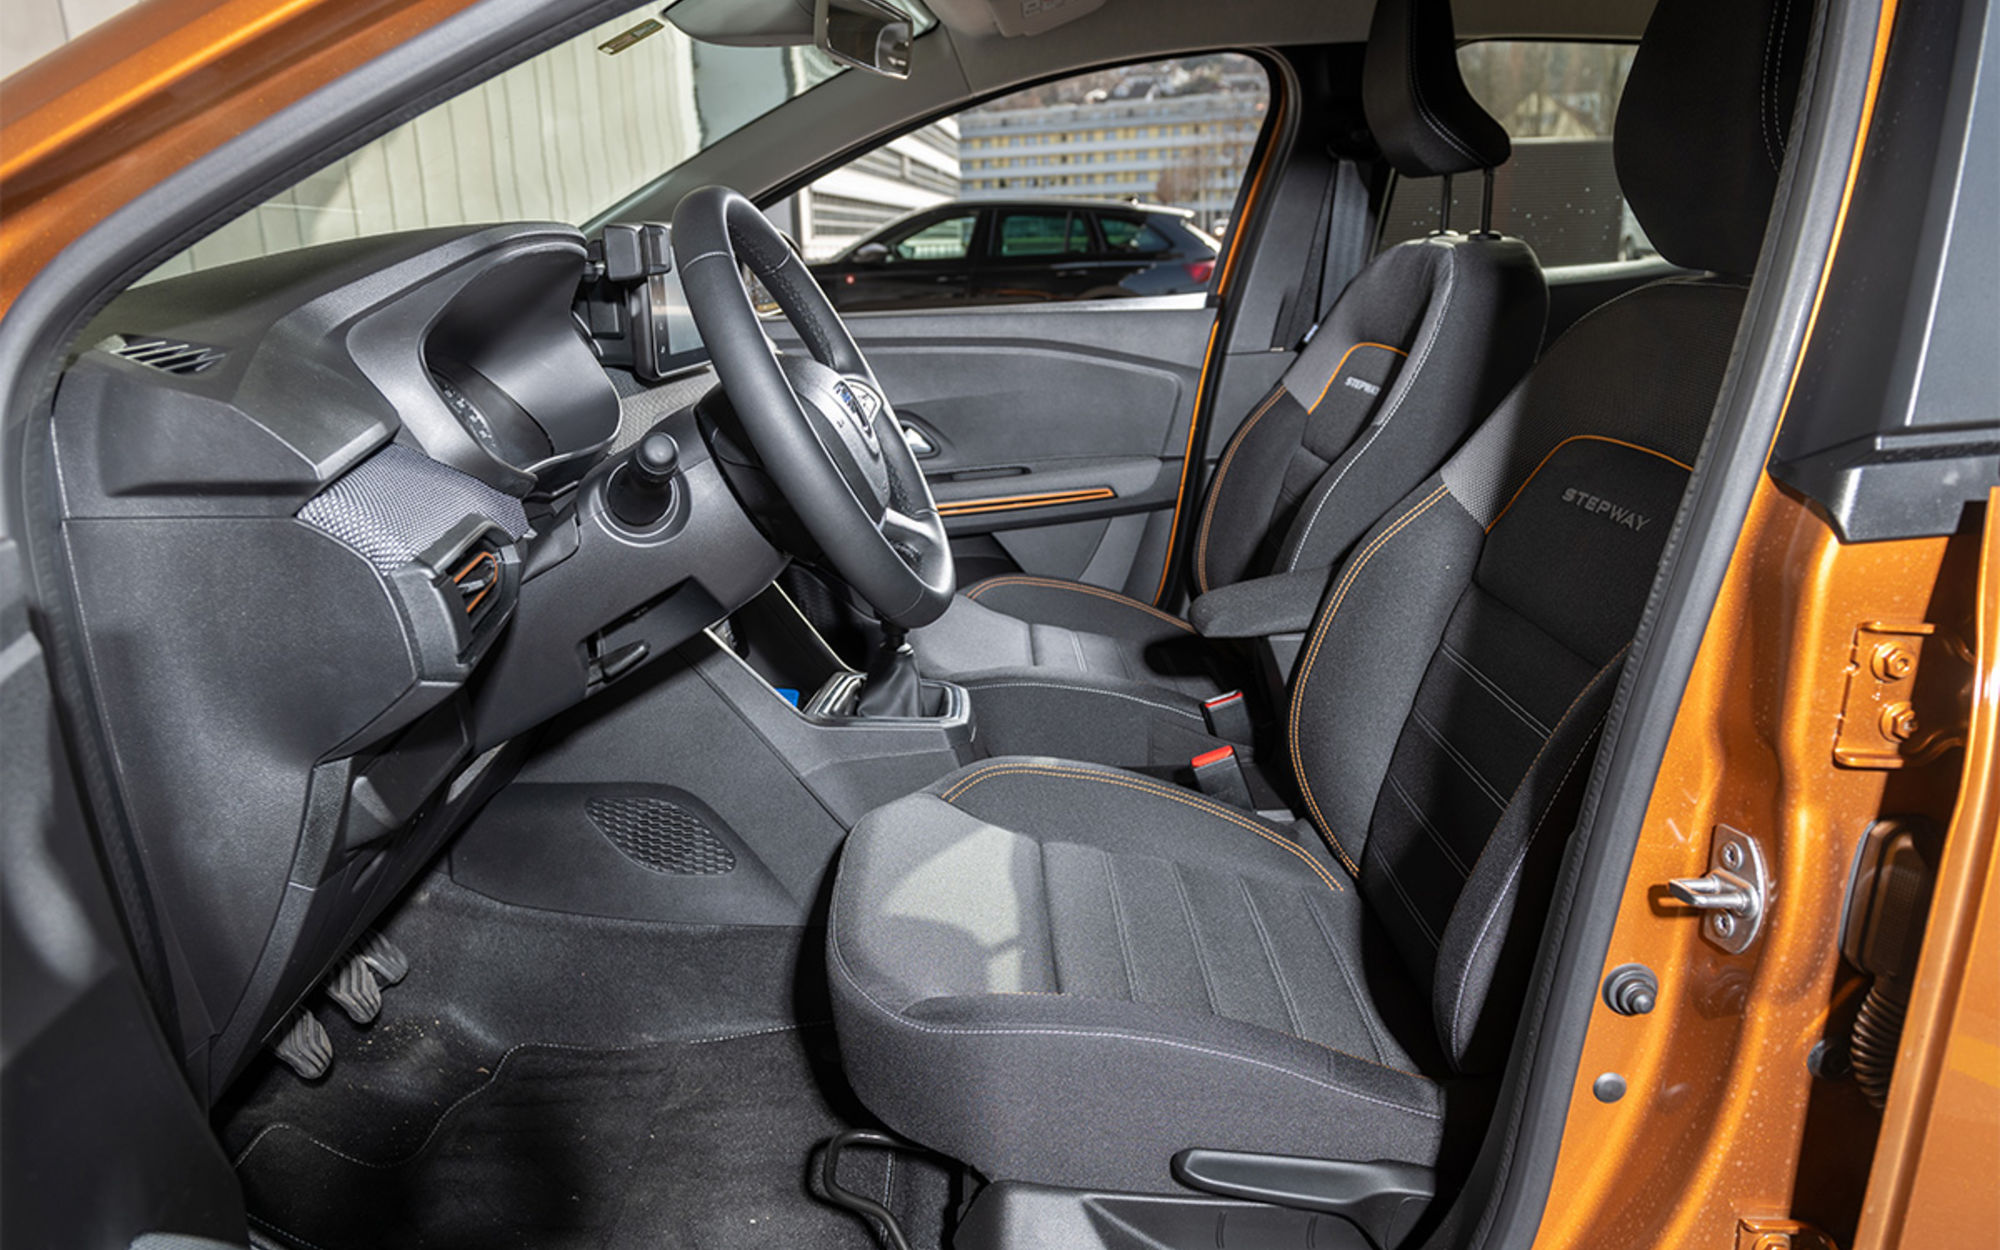 Test de voiture : Dacia Sandero Stepway TCE 90 Comfort - TCS Suisse